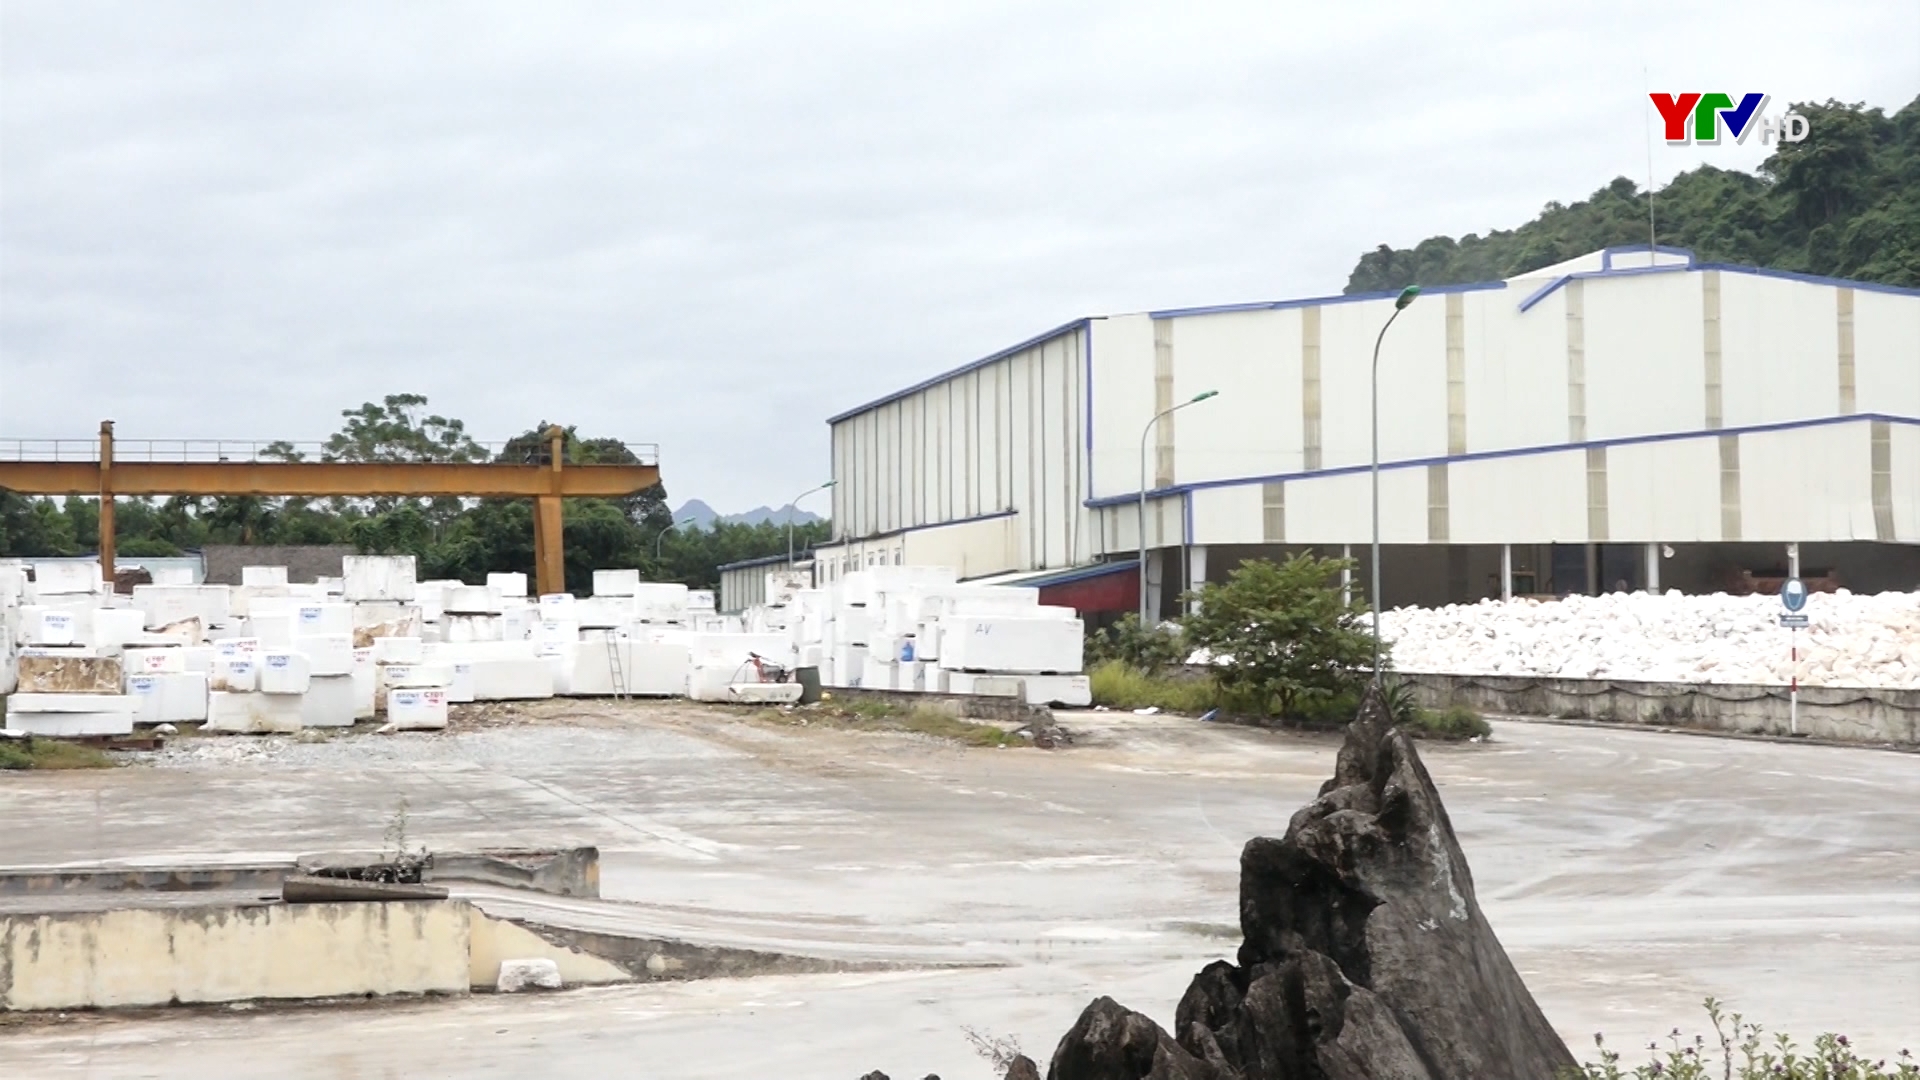 Huyện Lục Yên đẩy mạnh phát triển công nghiệp - tiểu thủ công nghiệp